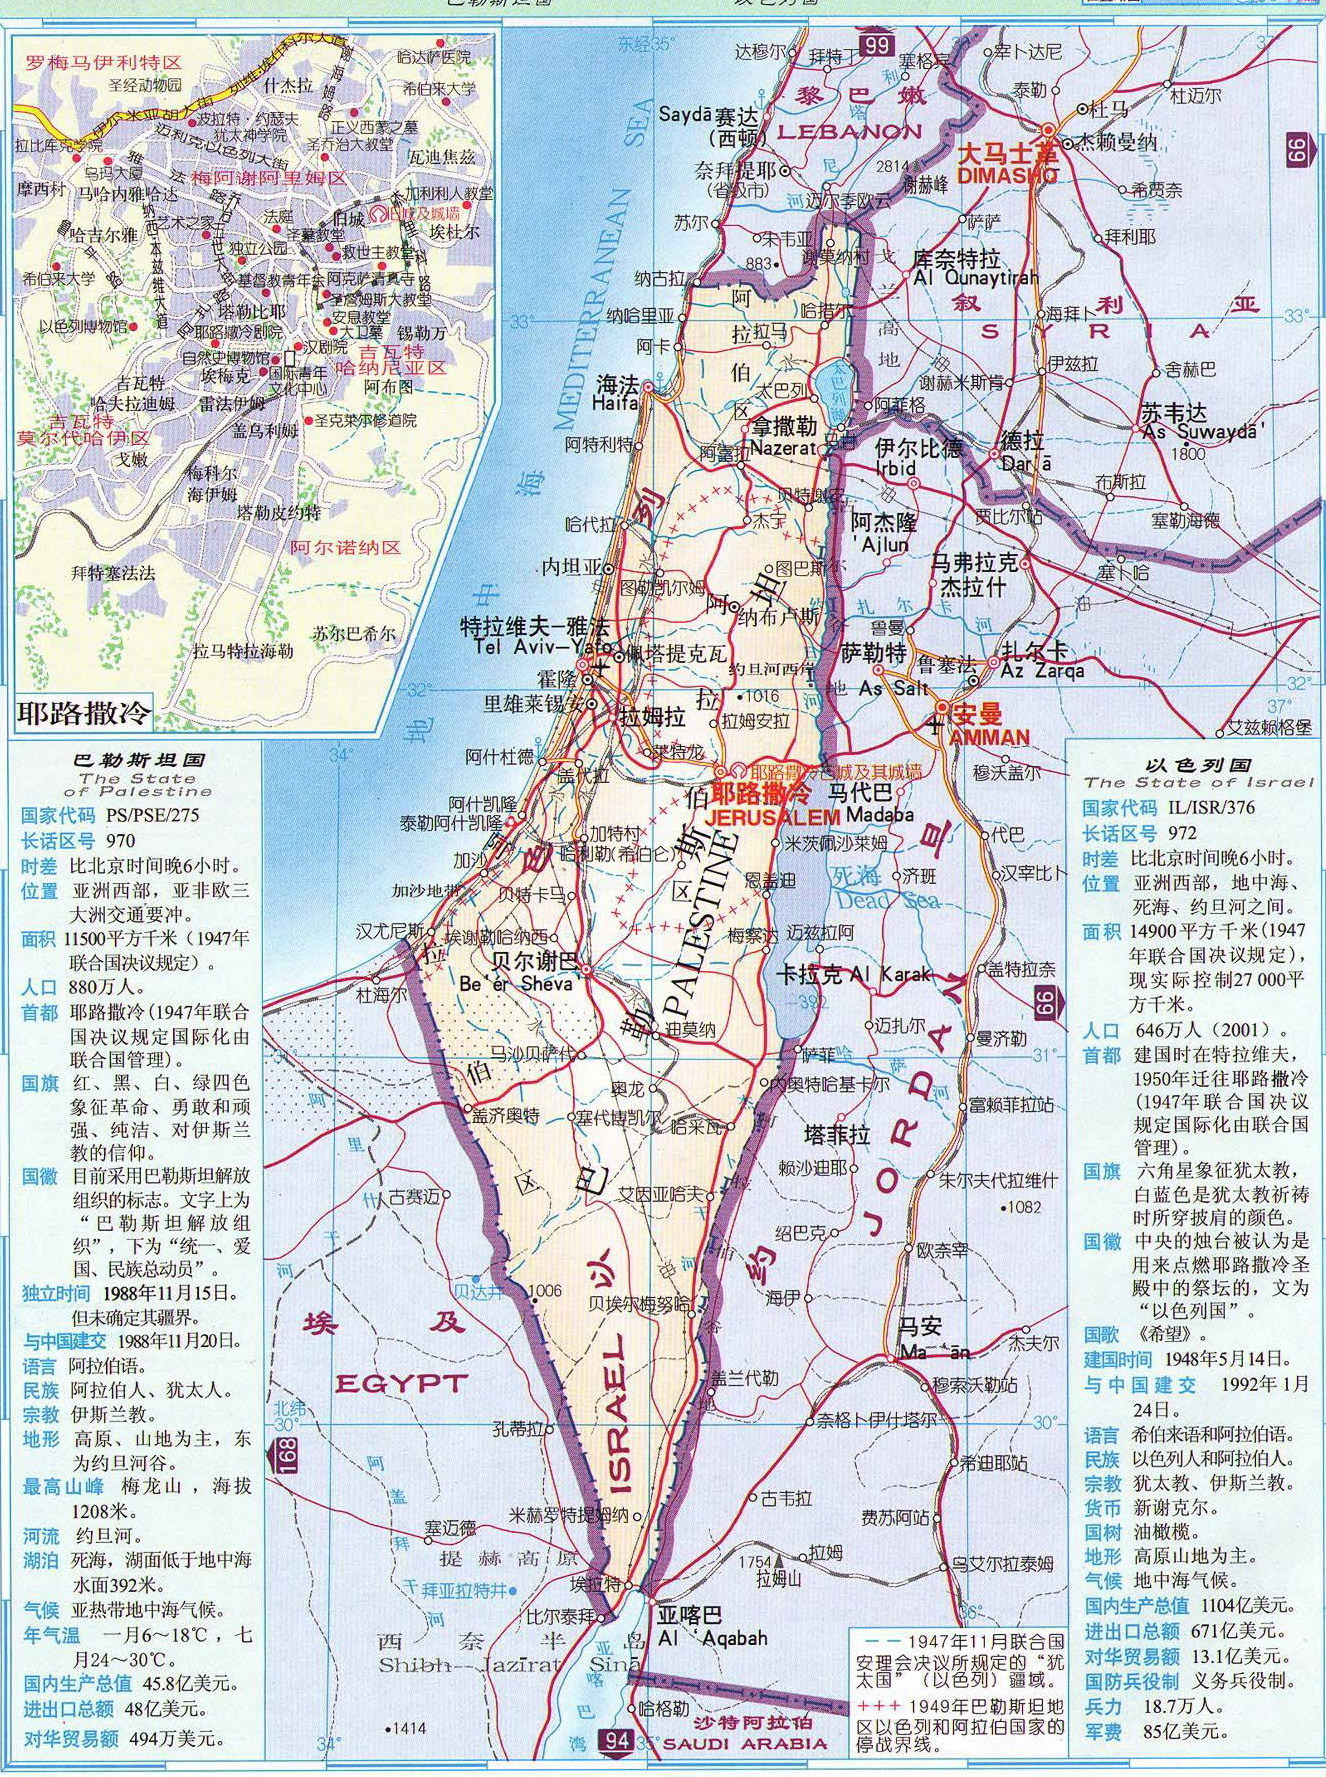 以色列面积为20770km,现实际管辖面积为25740km,包括戈兰高地,约旦河